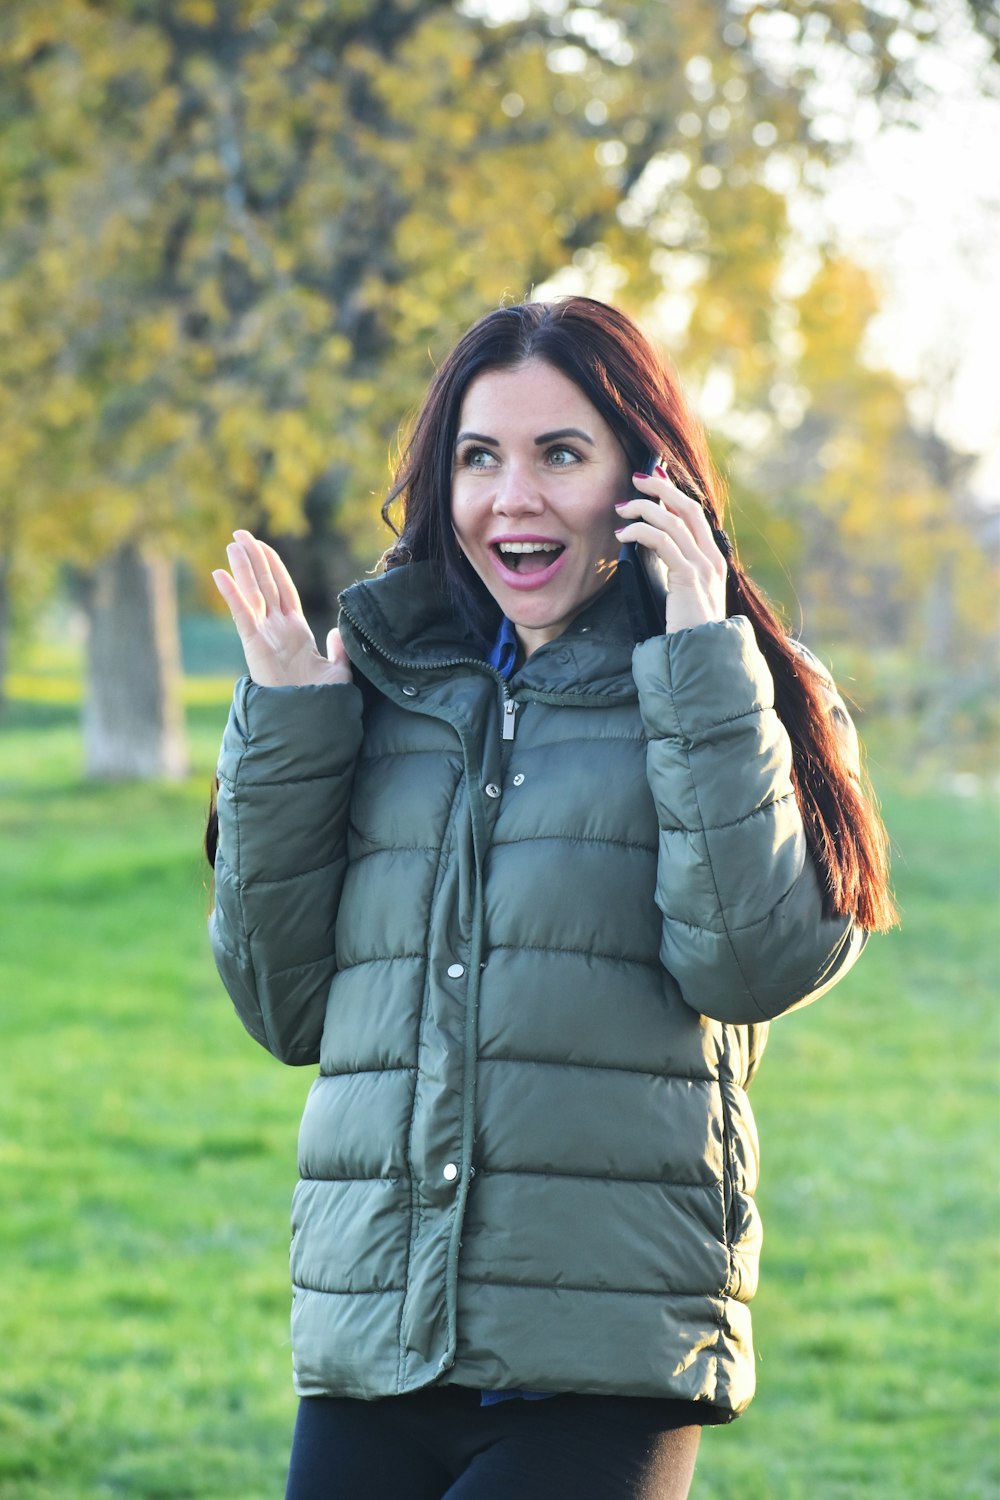 una donna in un parco che parla al cellulare